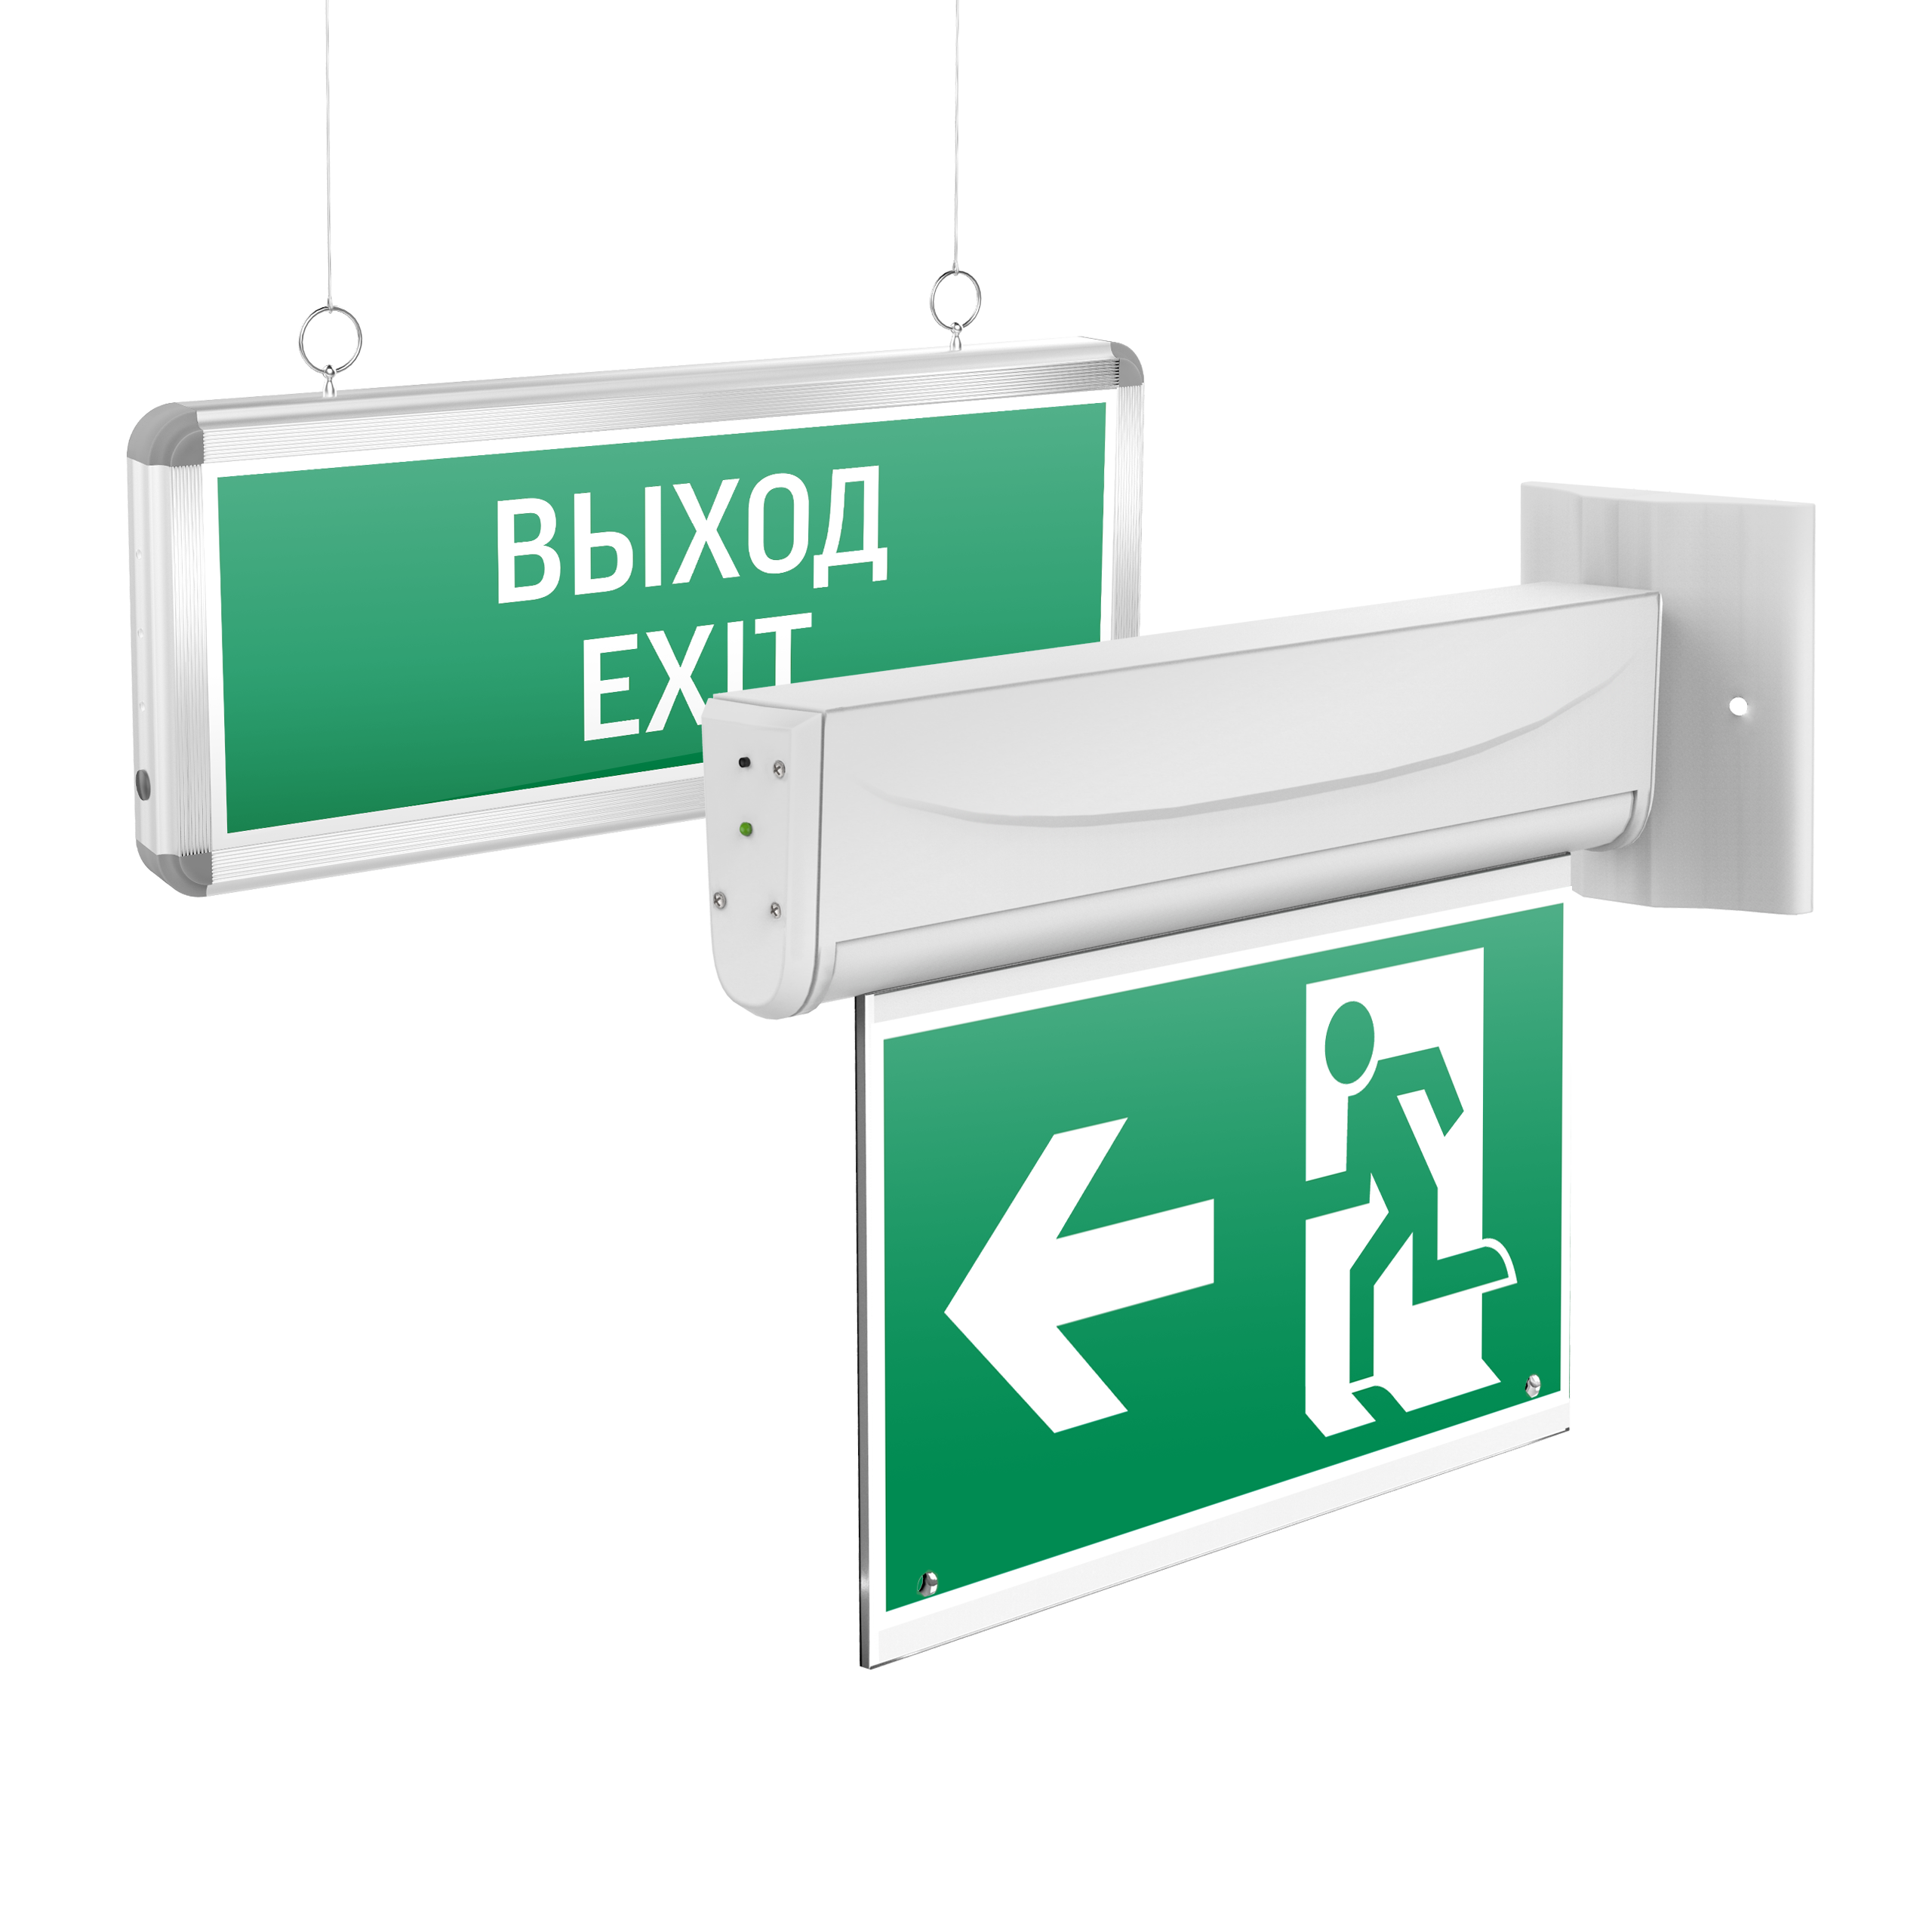 Аварийно-эвакуационные световые указатели Basic с нанесенными пиктограммами